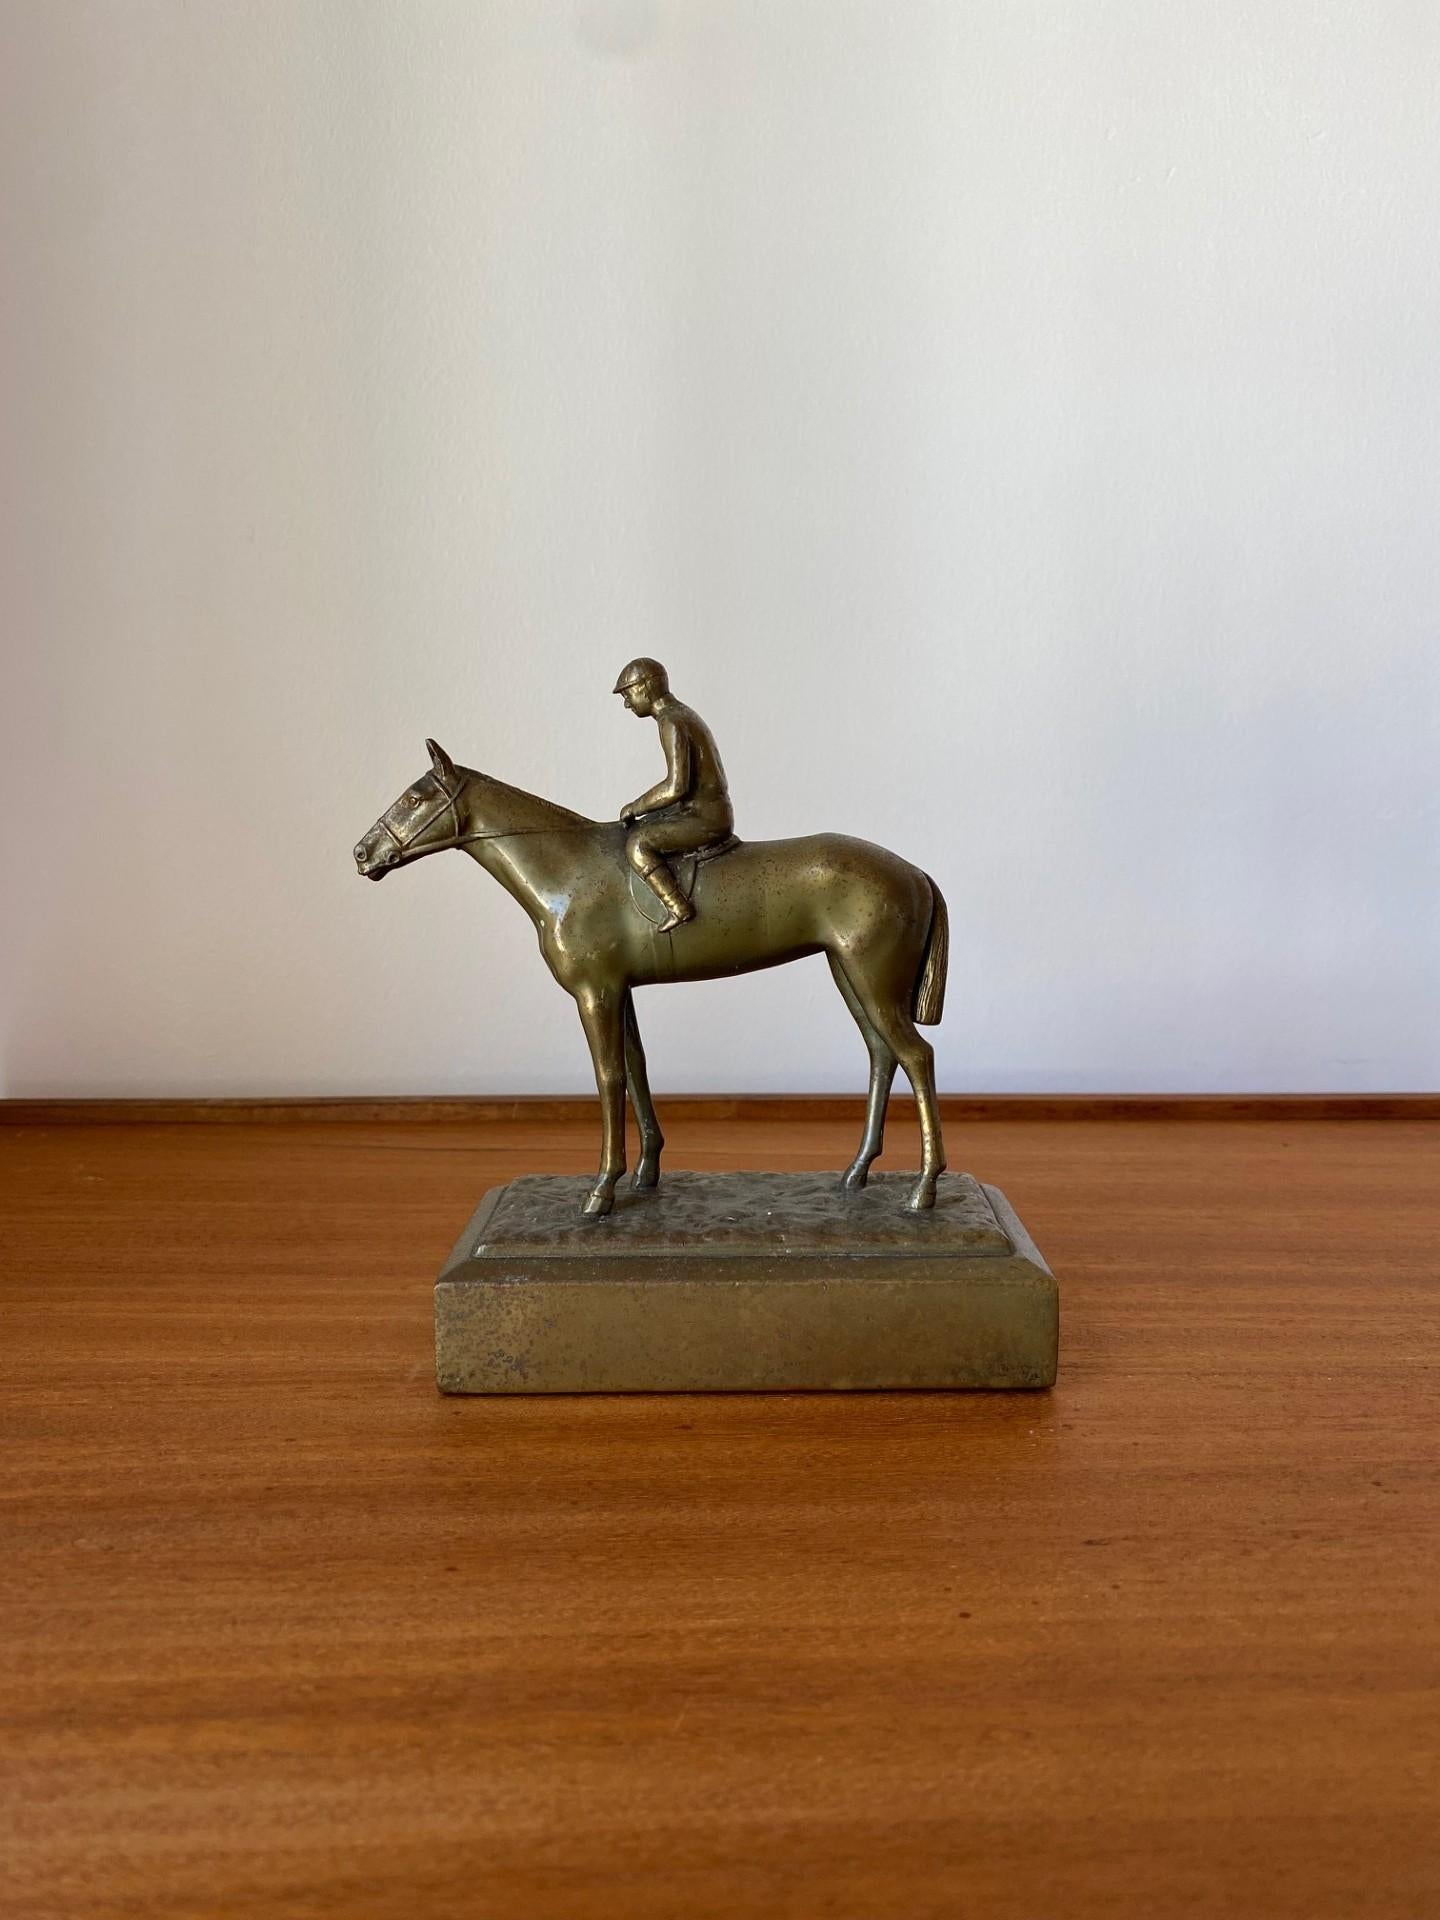 Unglaubliche Bronzeskulptur von Jennings Bros.  Dieses unglaubliche Stück aus gealterter Bronze stellt einen Jockey und ein Pferd dar.  Die Manifestation von Bronze mit einer Pferdedarstellung erhebt sich zu Status und Brillanz.  Die ruhige Figur